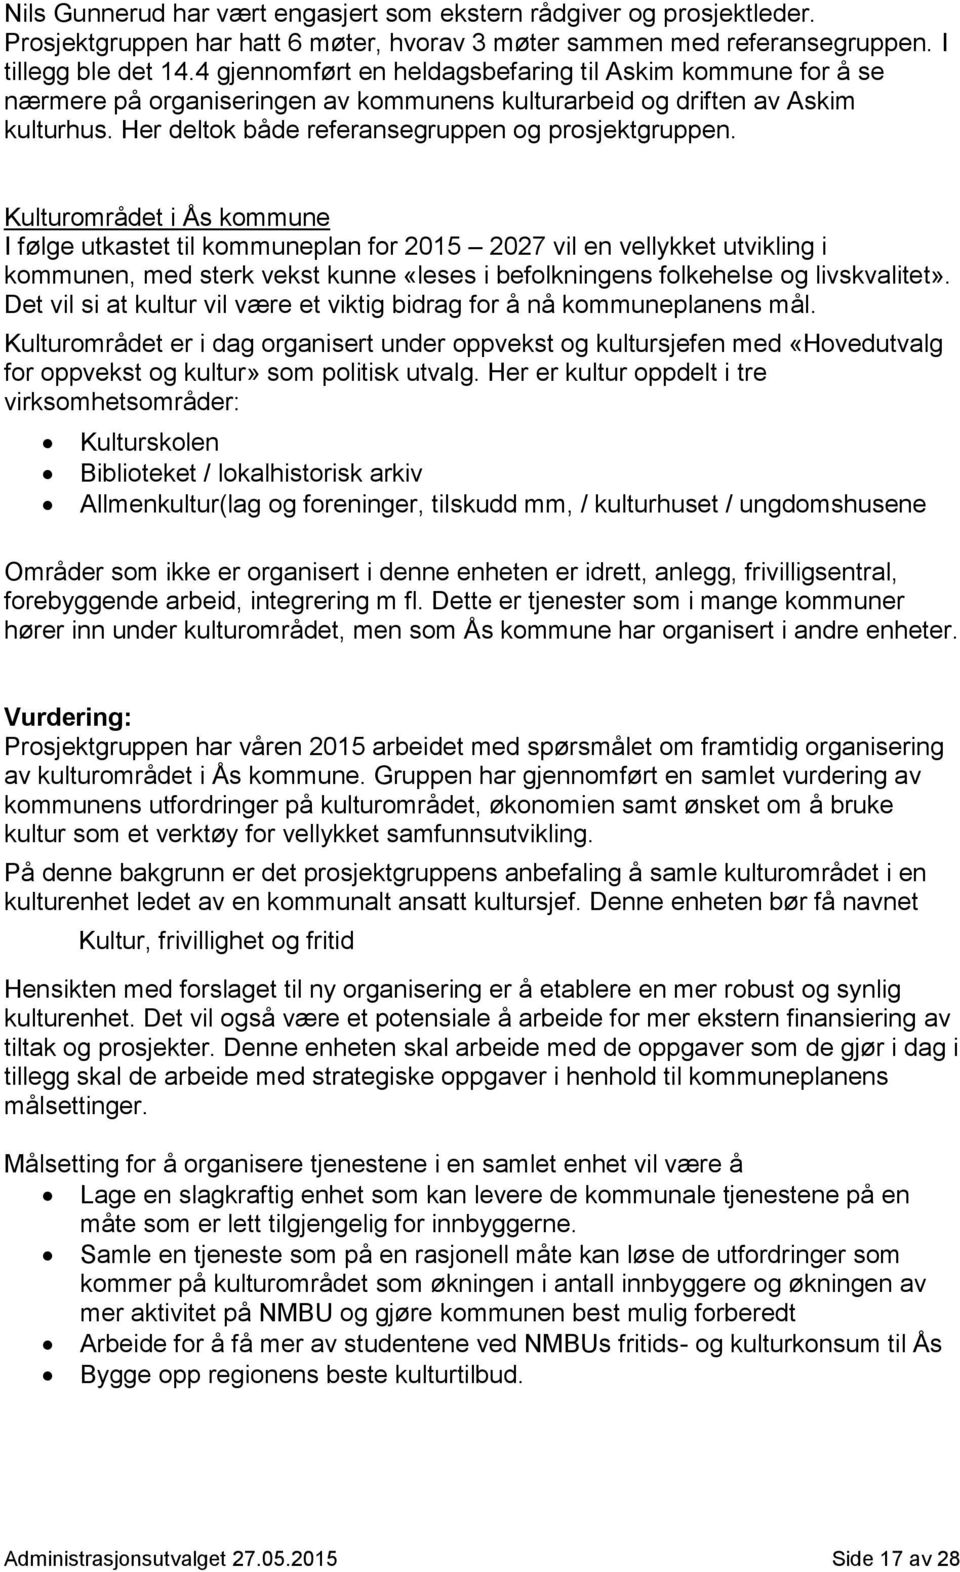 Kulturområdet i Ås kommune I følge utkastet til kommuneplan for 2015 2027 vil en vellykket utvikling i kommunen, med sterk vekst kunne «leses i befolkningens folkehelse og livskvalitet».